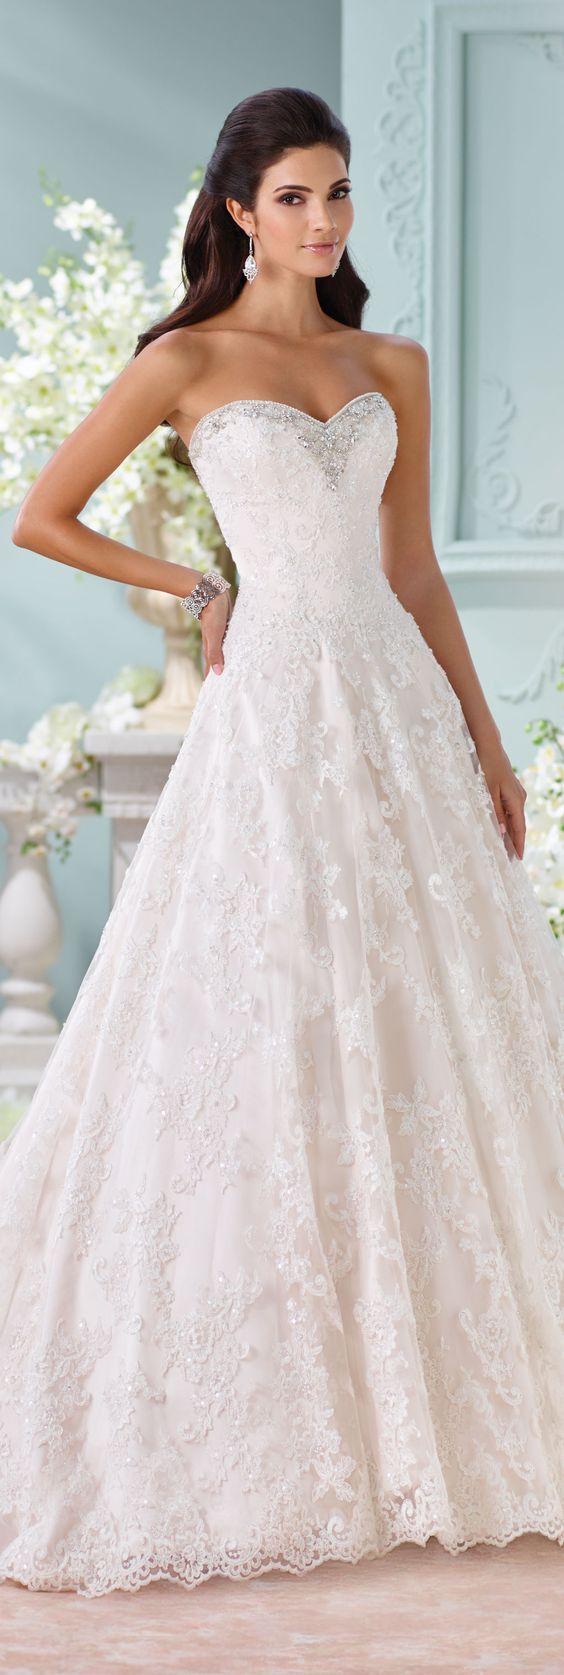 Hochzeit - Alencon Lace Wedding Dress